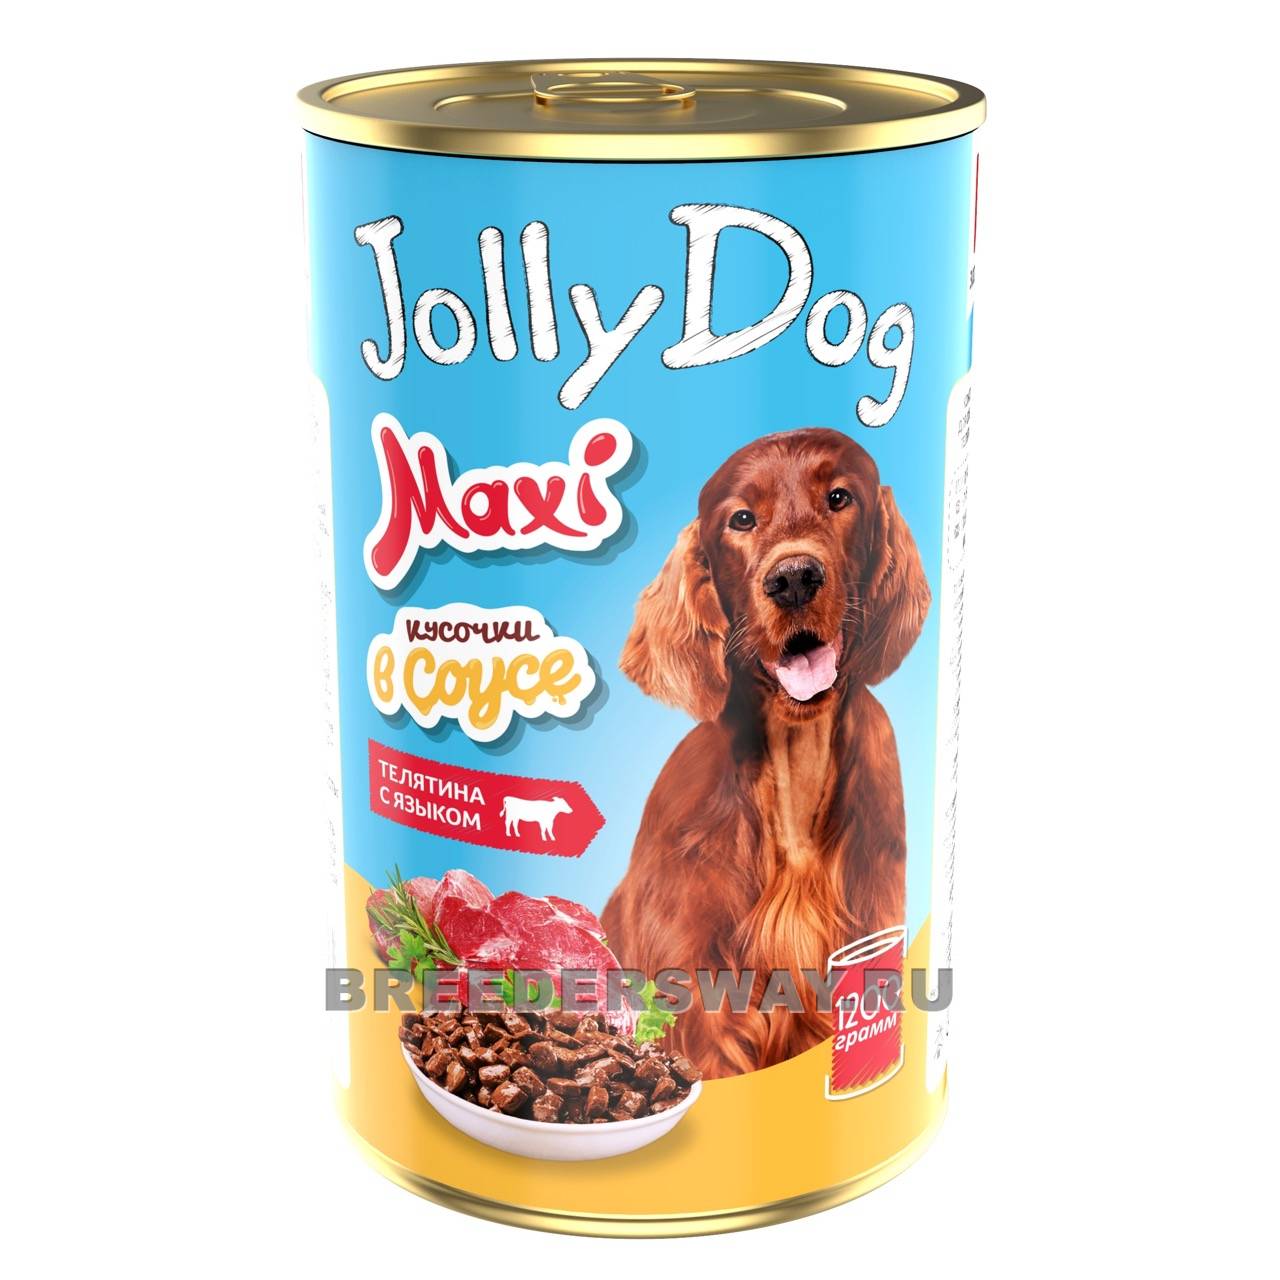 Jolly Dog Телятина с языком д/собак 1200гр